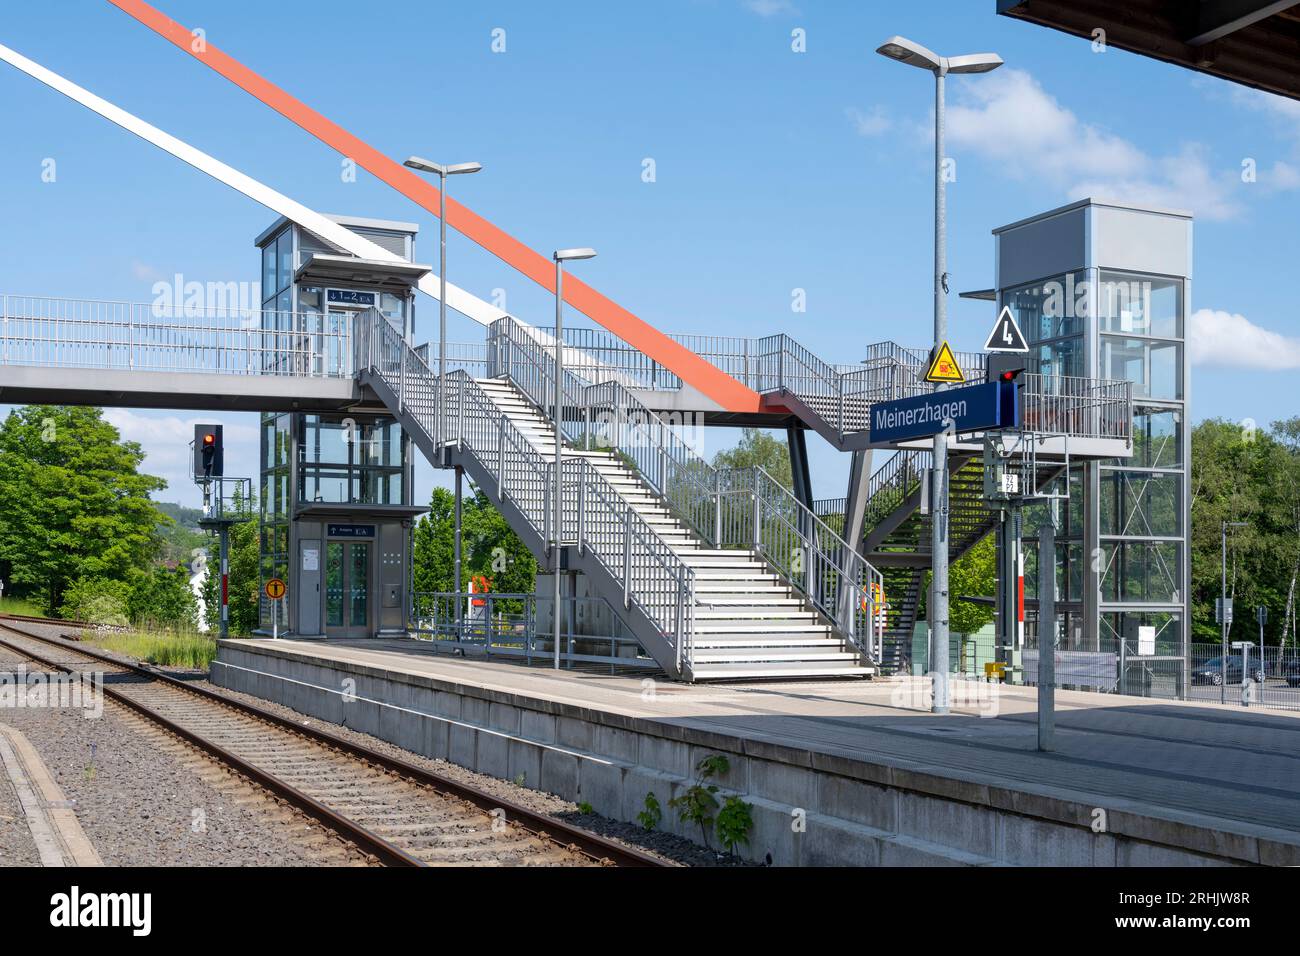 Deutschland, NRW, Märkischer Kreis, Meinerzhagen, Bahnhof Stock Photo